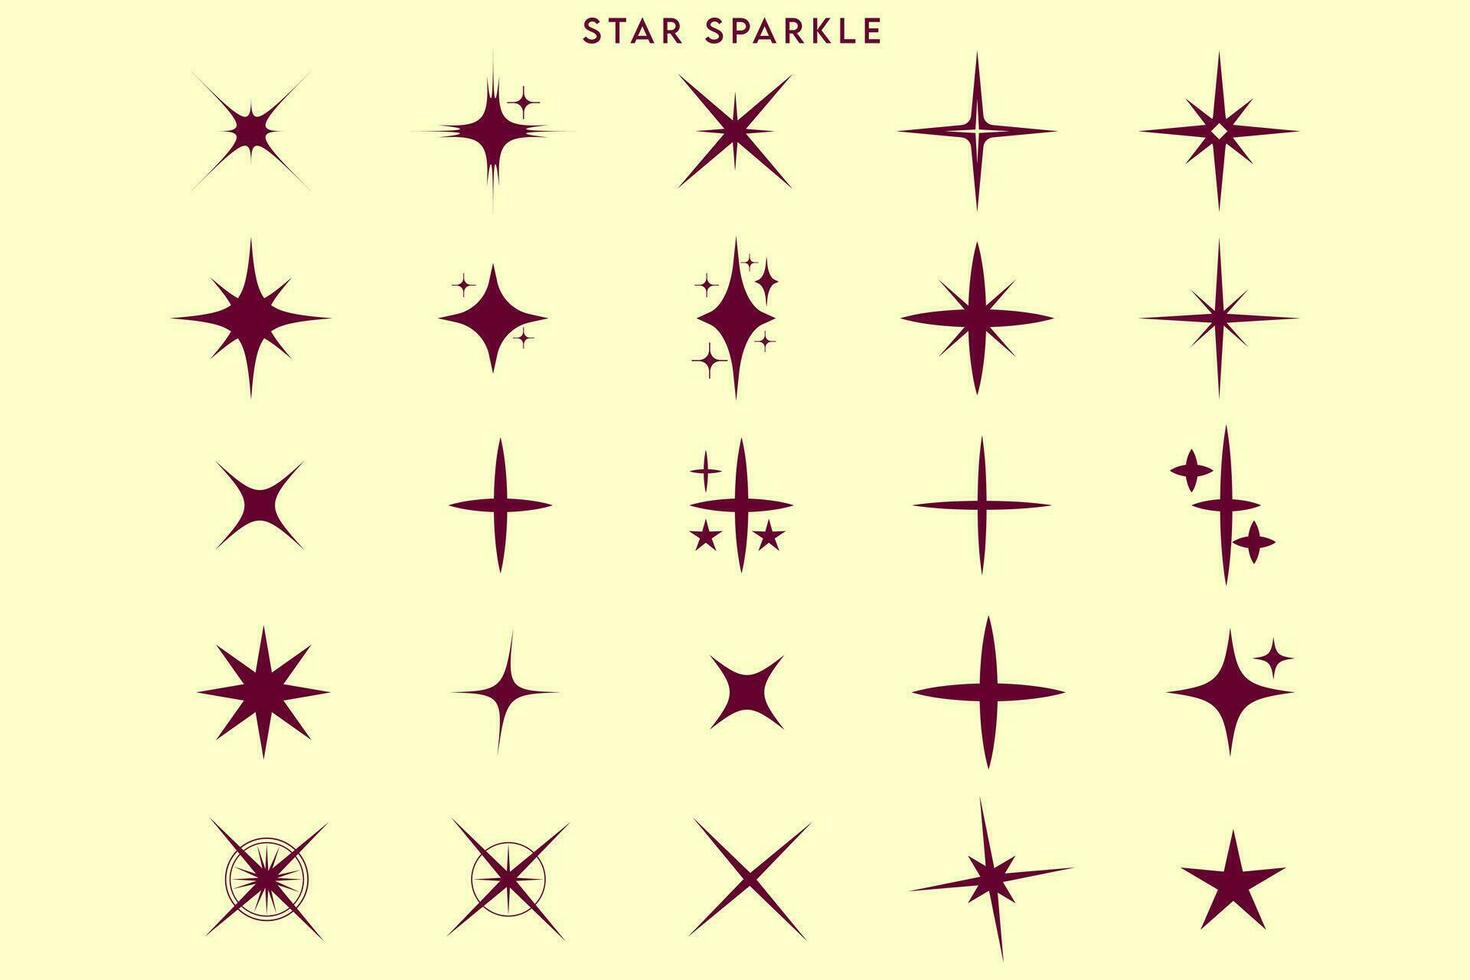 rot und Weiß Sterne, rot und Gelb Sterne, Sterne auf Weiß Hintergrund, Star funkeln und funkeln platzen Blitz Sterne vektor